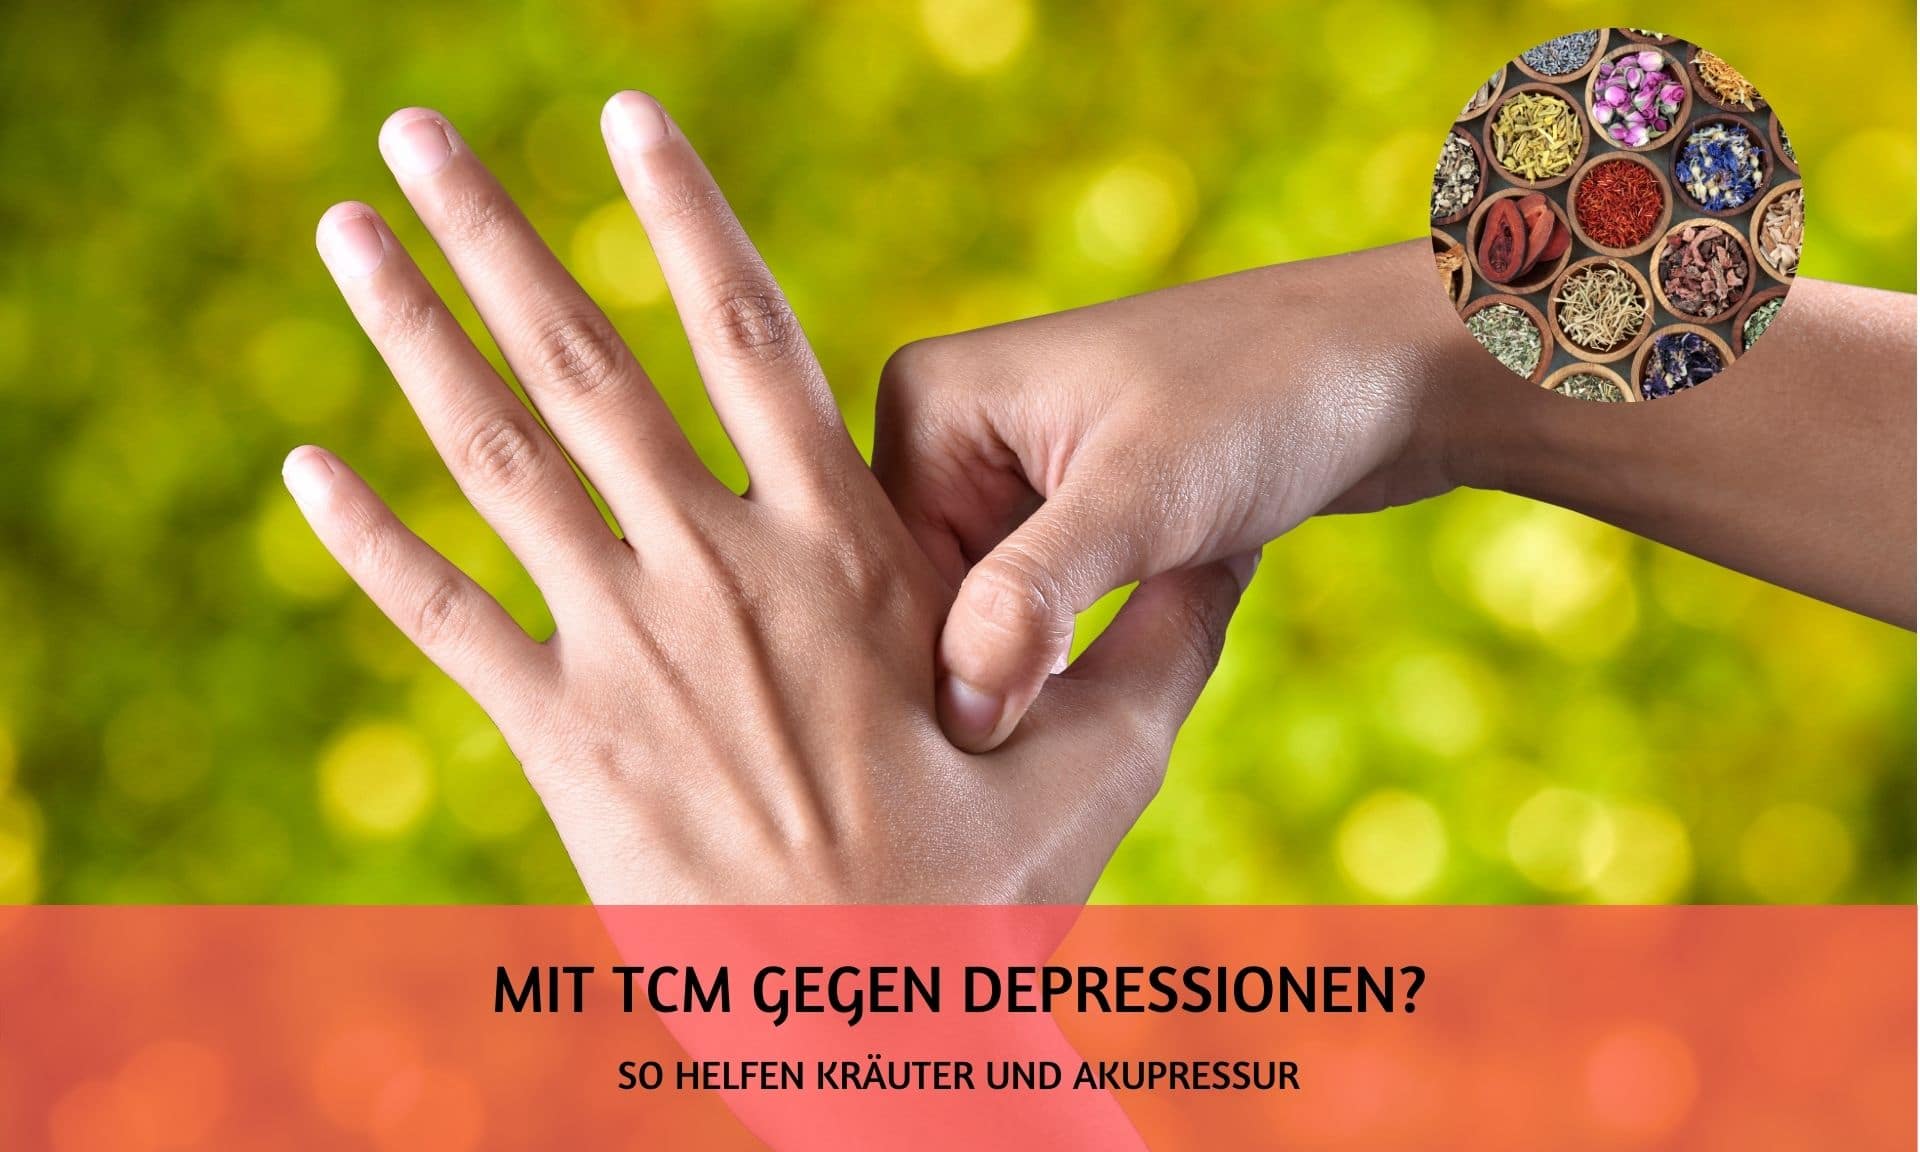 TCM Kruaeuter und Akupressur gegen Depressionen